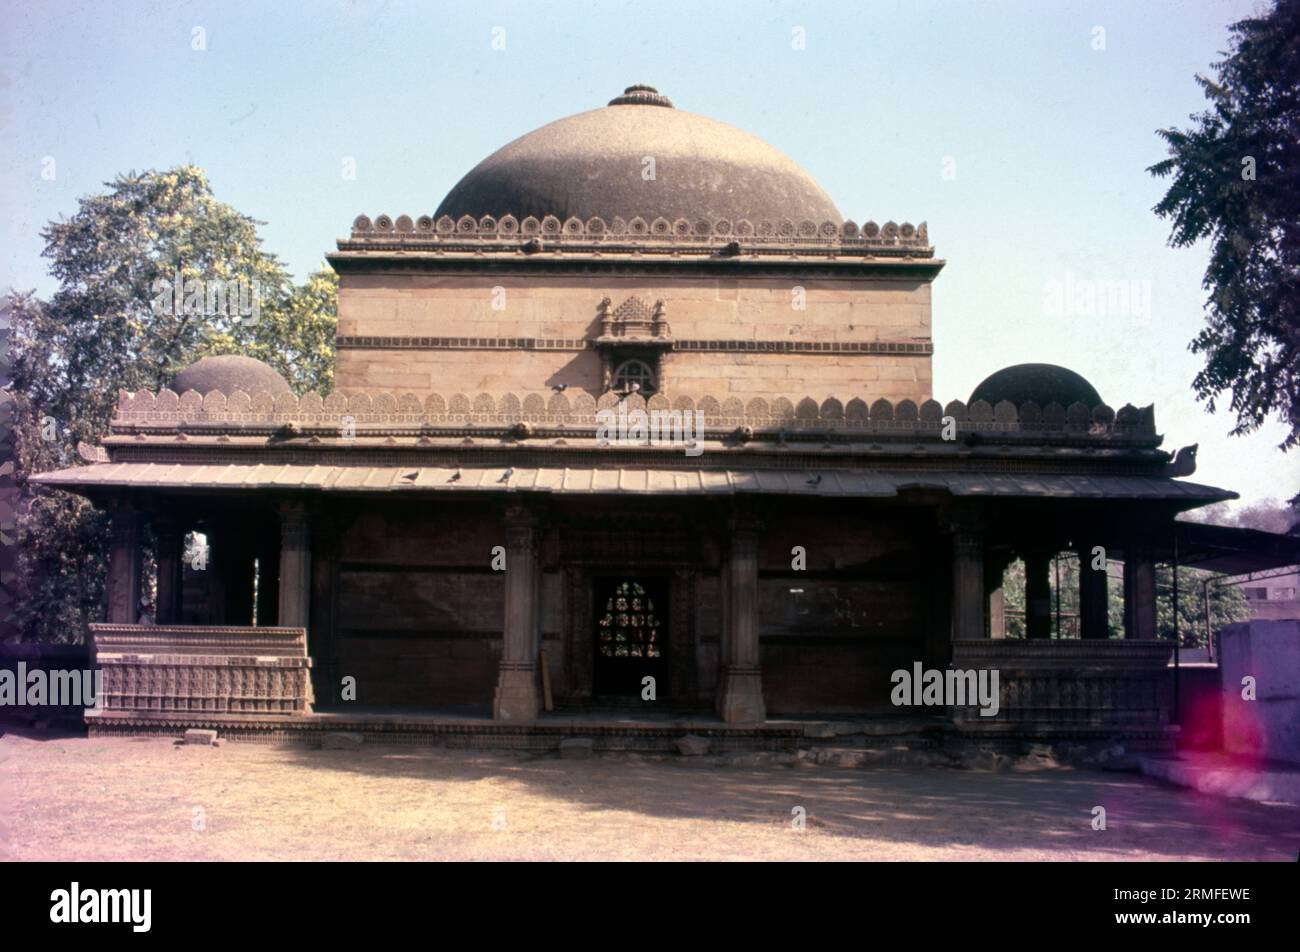 Der Bai Harir Sultani Stepwell ist ein 15. Jahrhundert langer Brunnen in Asarwa, 15 km von Ahmedabad, Gujarat, Indien entfernt. Bai Harir Tritt Ein. Treppenhaus. Während der Regierungszeit von Mahmud Shah errichtete Bai Harir Sultani, lokal bekannt als Dhai Harir, den Stufenbrunnen. Der Name wurde später in Dada Hari korrumpiert. Stockfoto